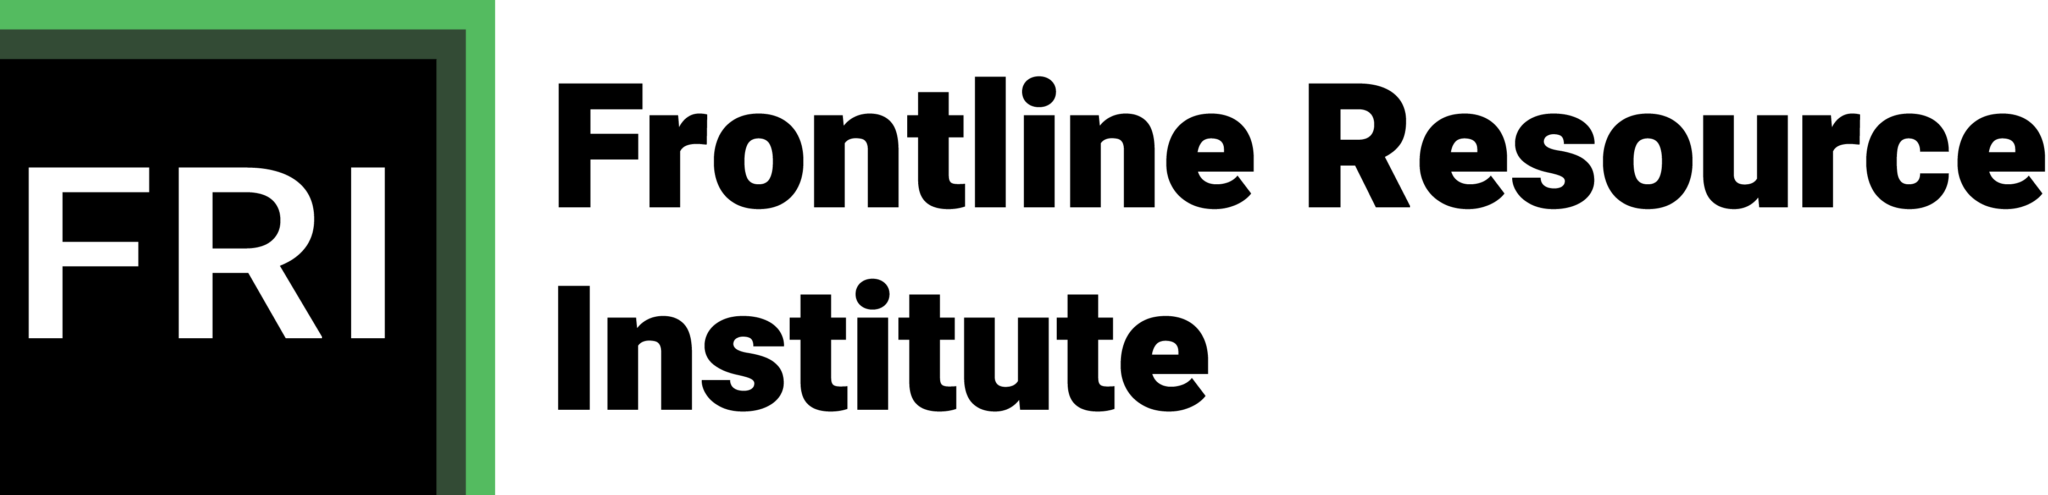 Frontline Resource Institute